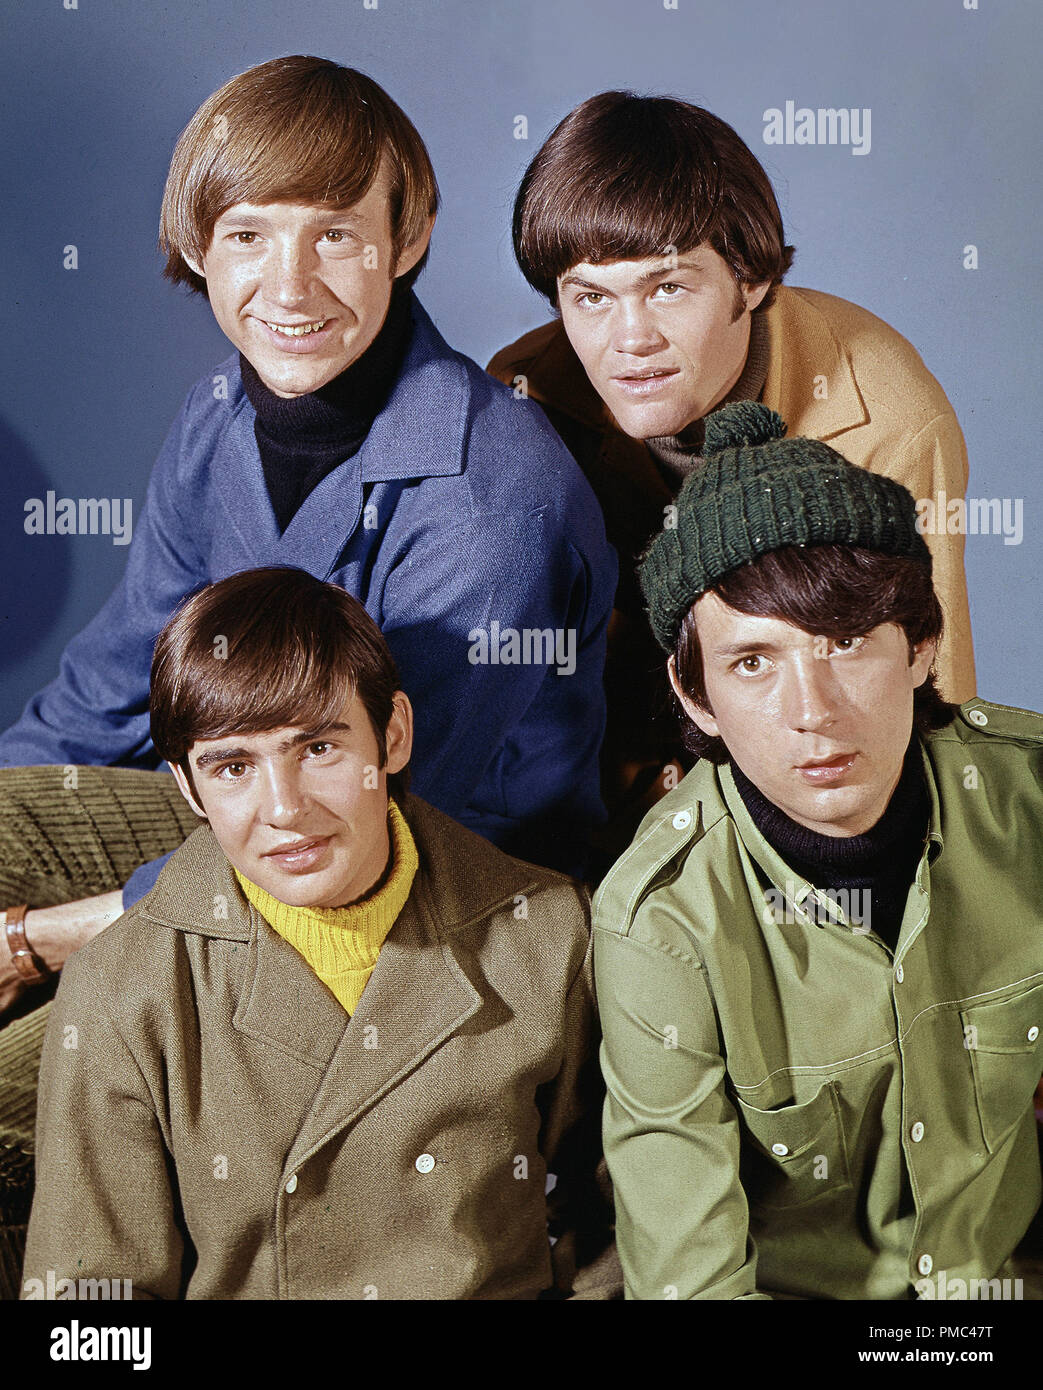 Werbung Foto von 'The Monkees' Pop Music Group, Peter Tork, Micky Dolenz, Mike Nesmith und Davy Jones ca. 1966 Datei Referenz # 33536 182 THA Stockfoto